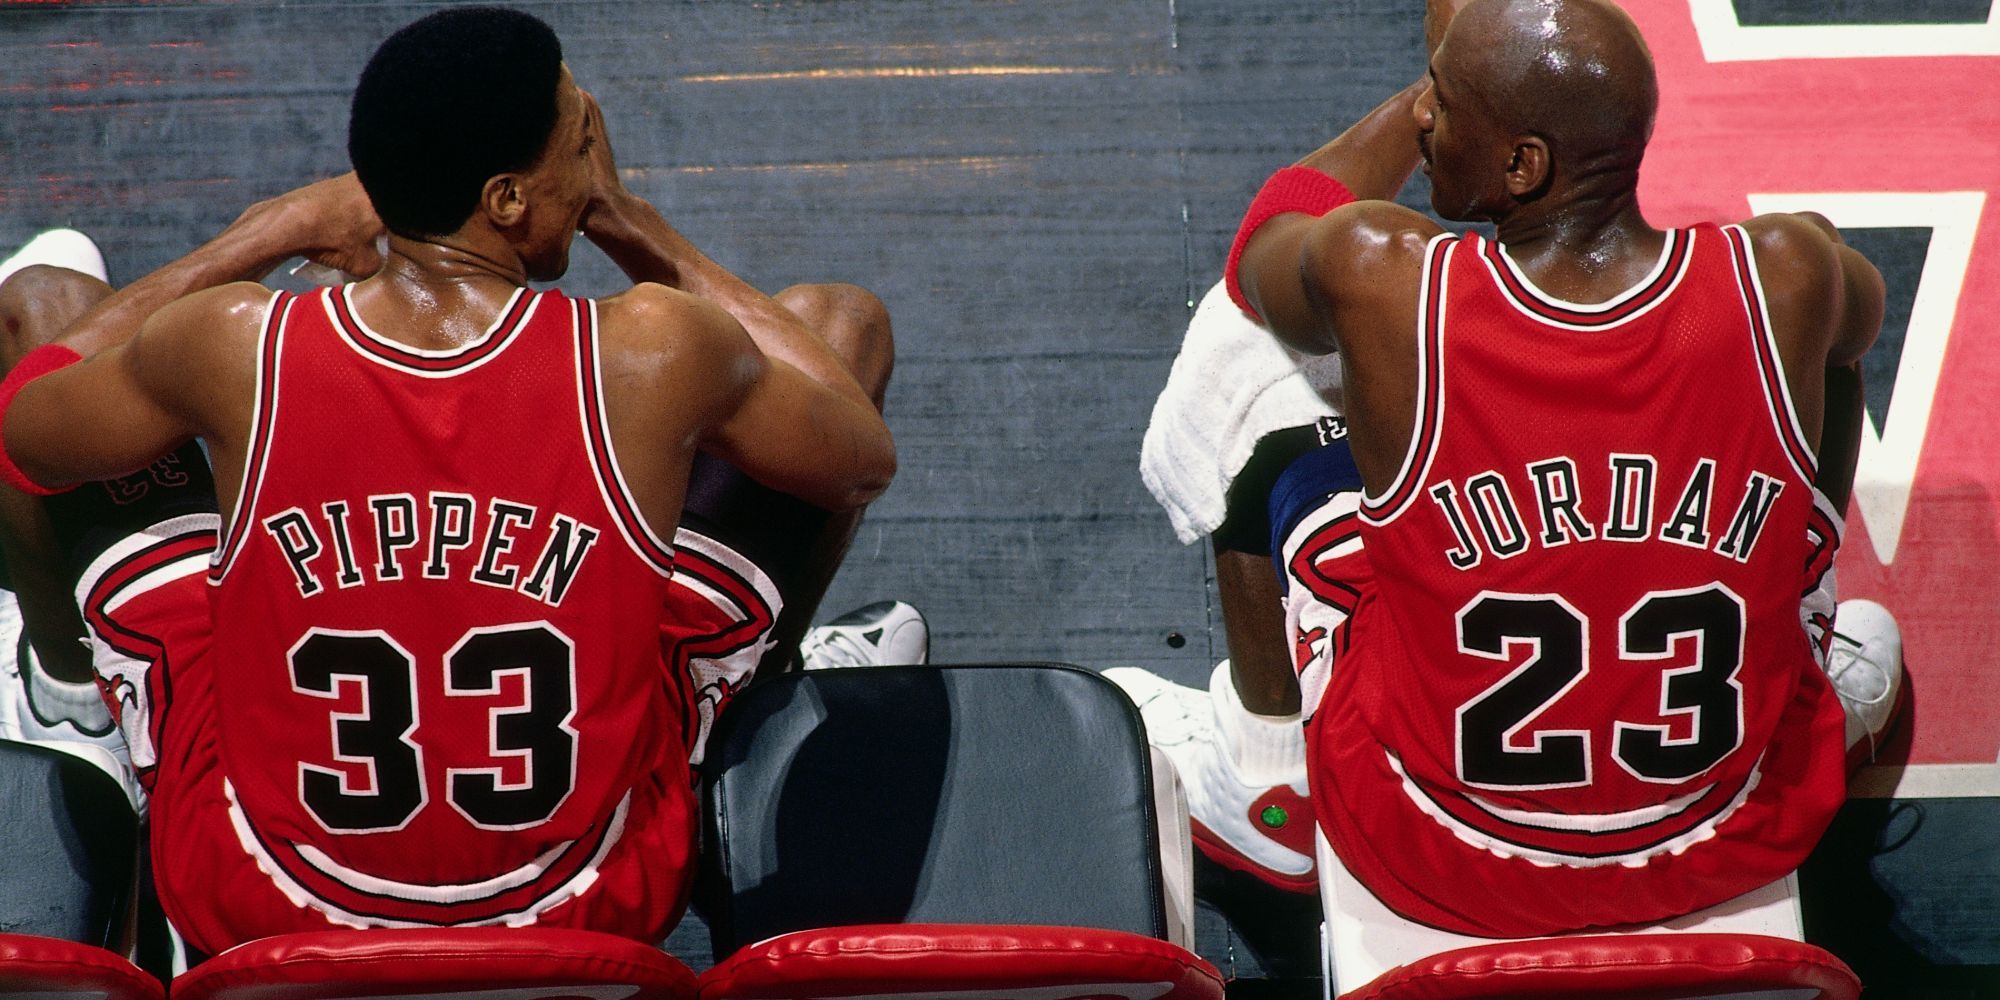 Scottie Pippen and Michael Jordan sit side by side